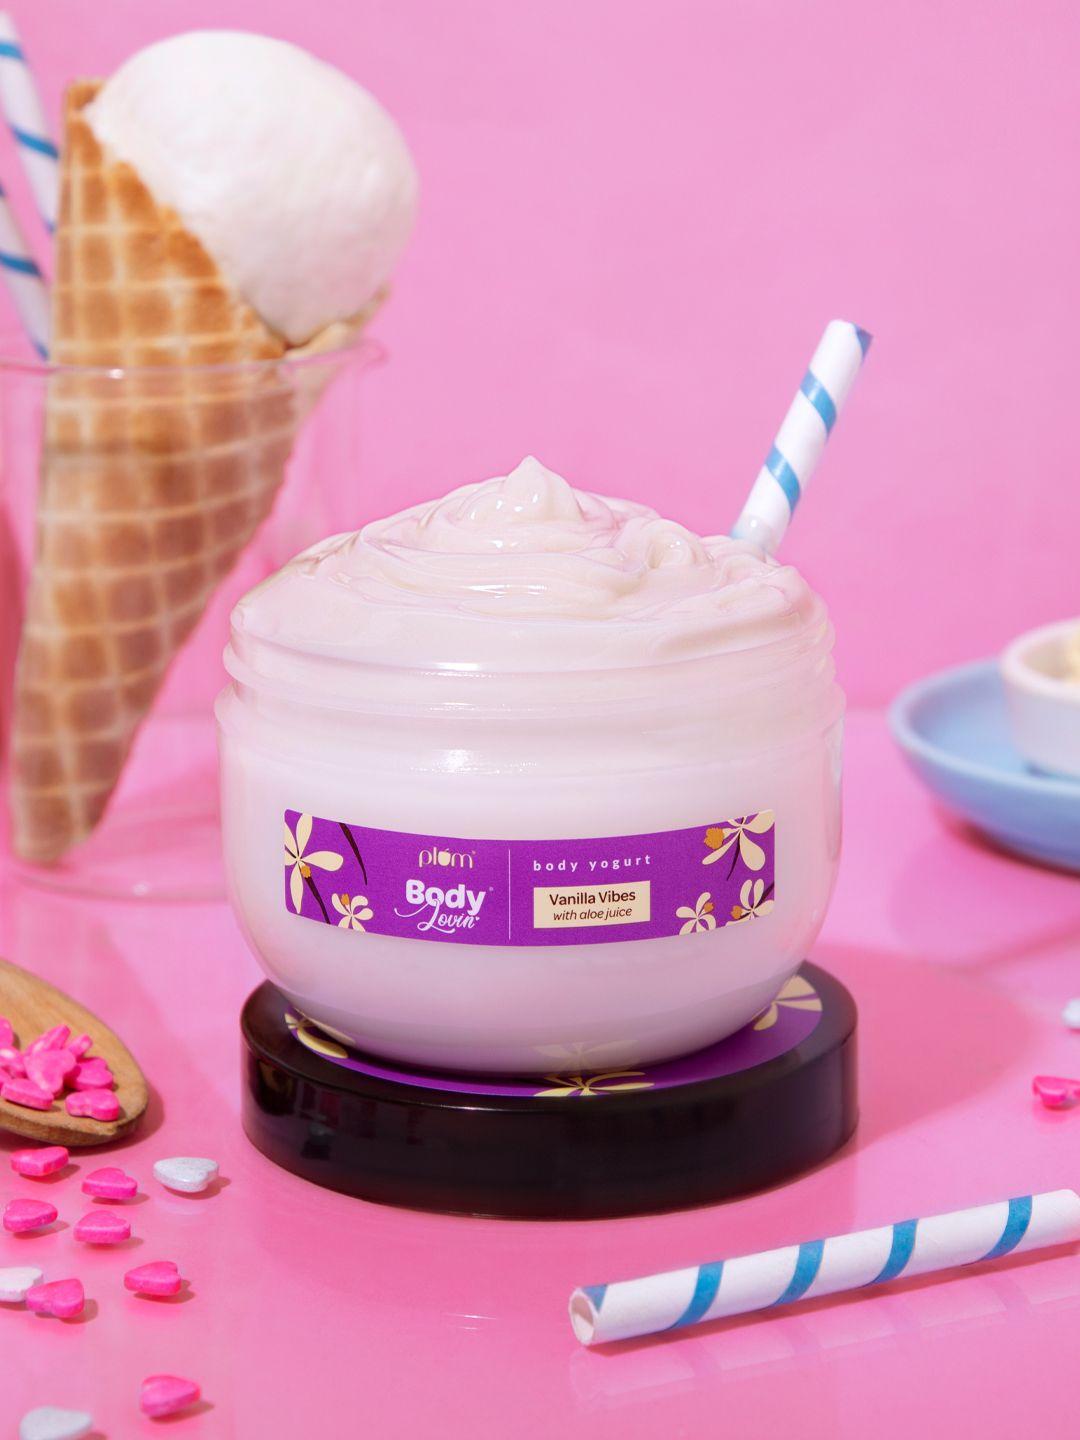 plum bodylovin' vanilla vibes body yogurt - 250 g